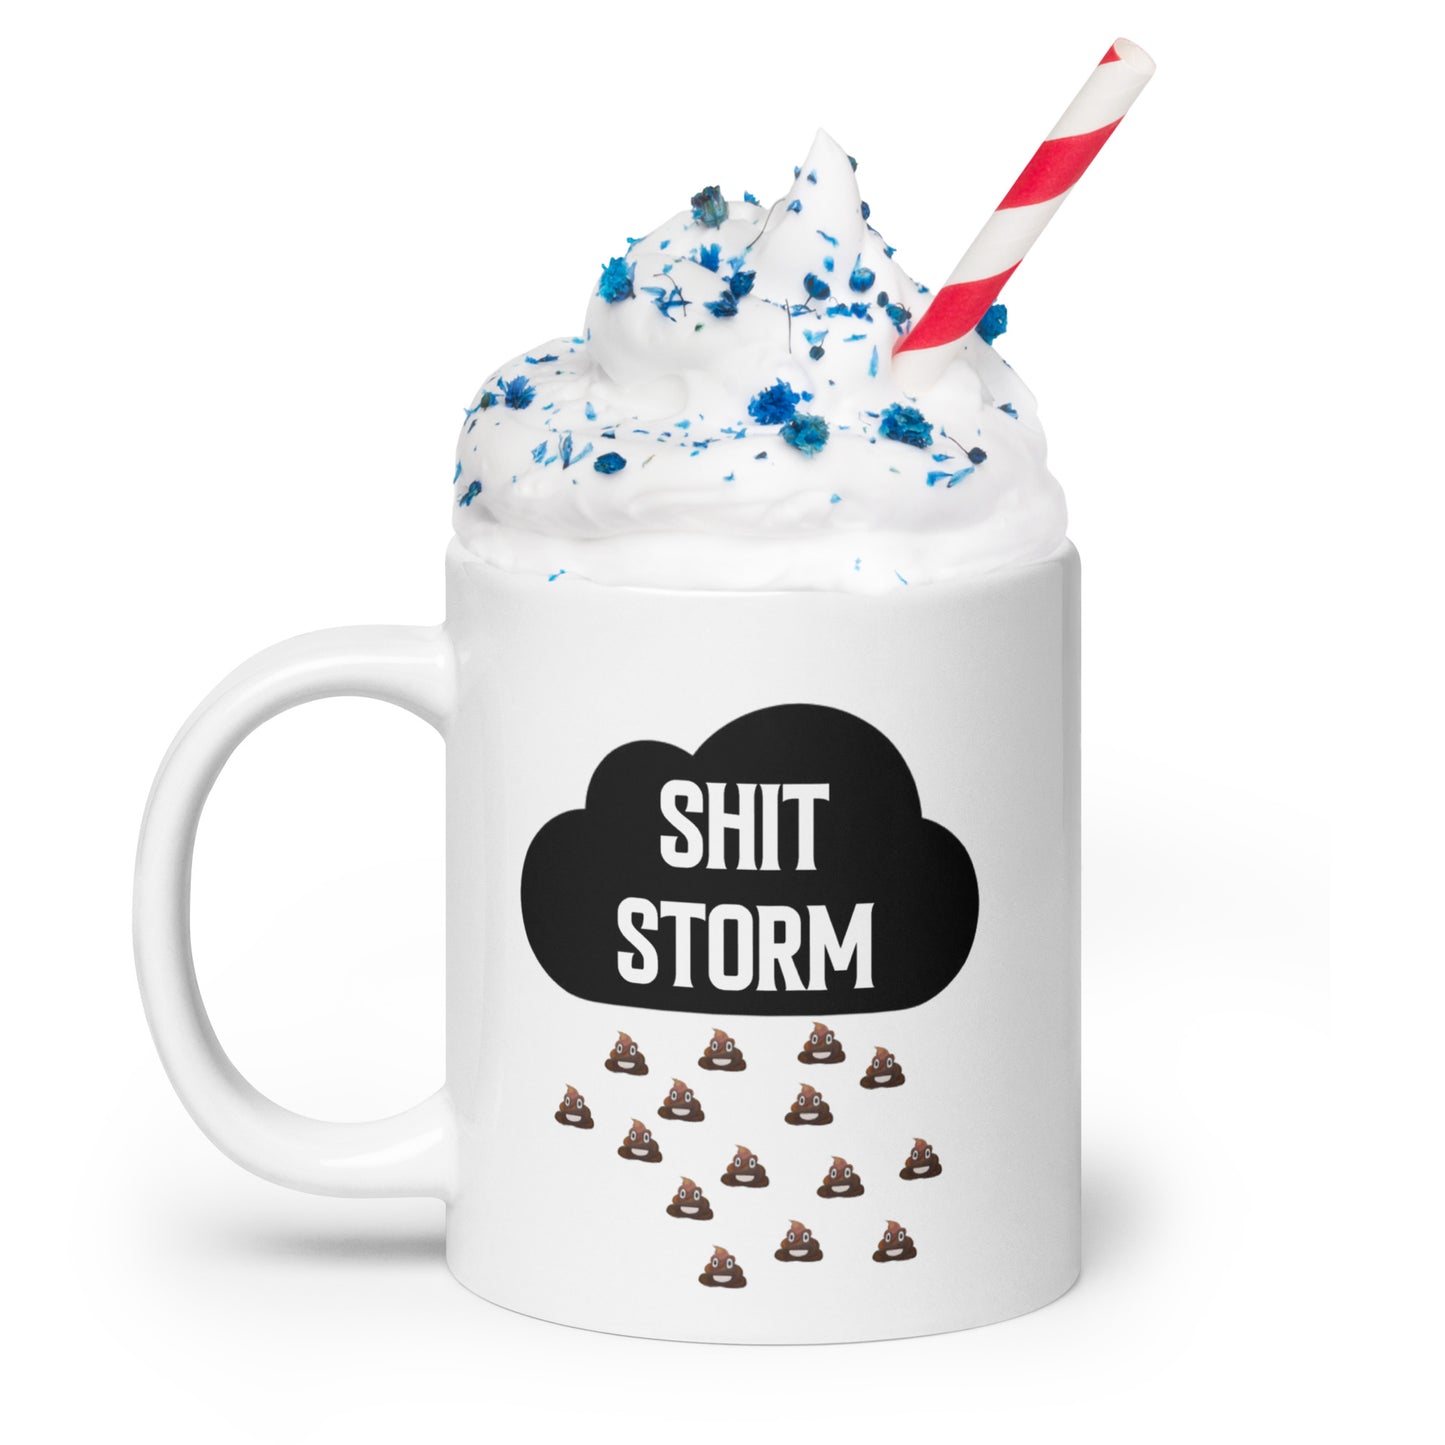 SH*T storm: White glossy mug